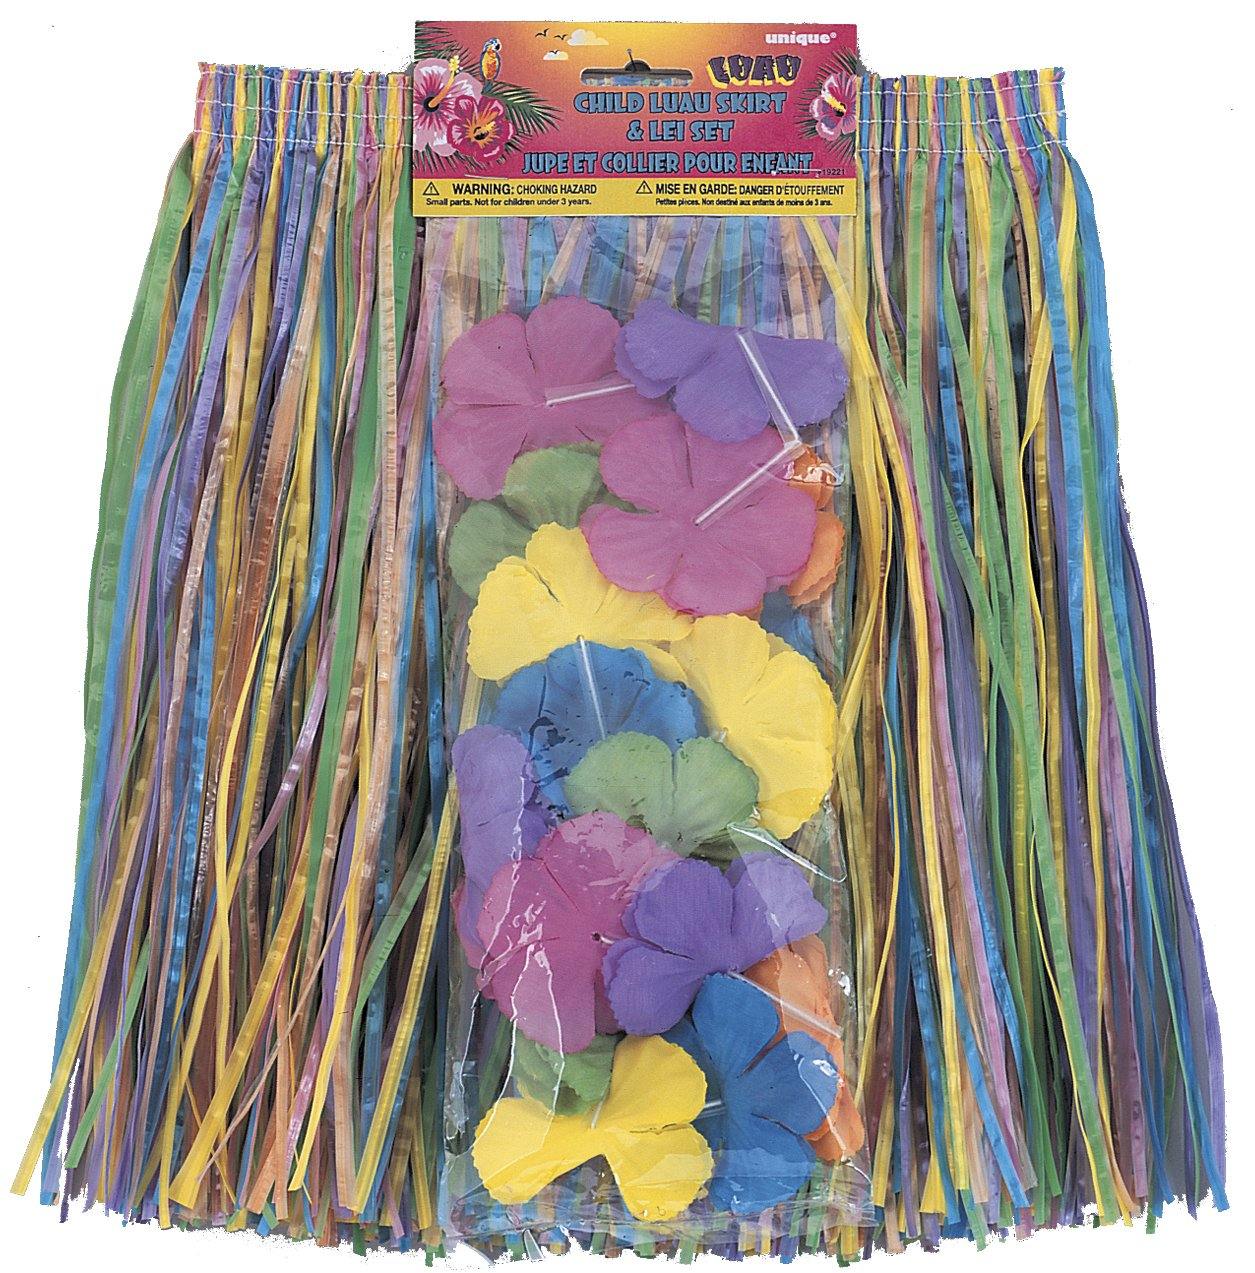 Luau Child Hula Skirt & Lei Set